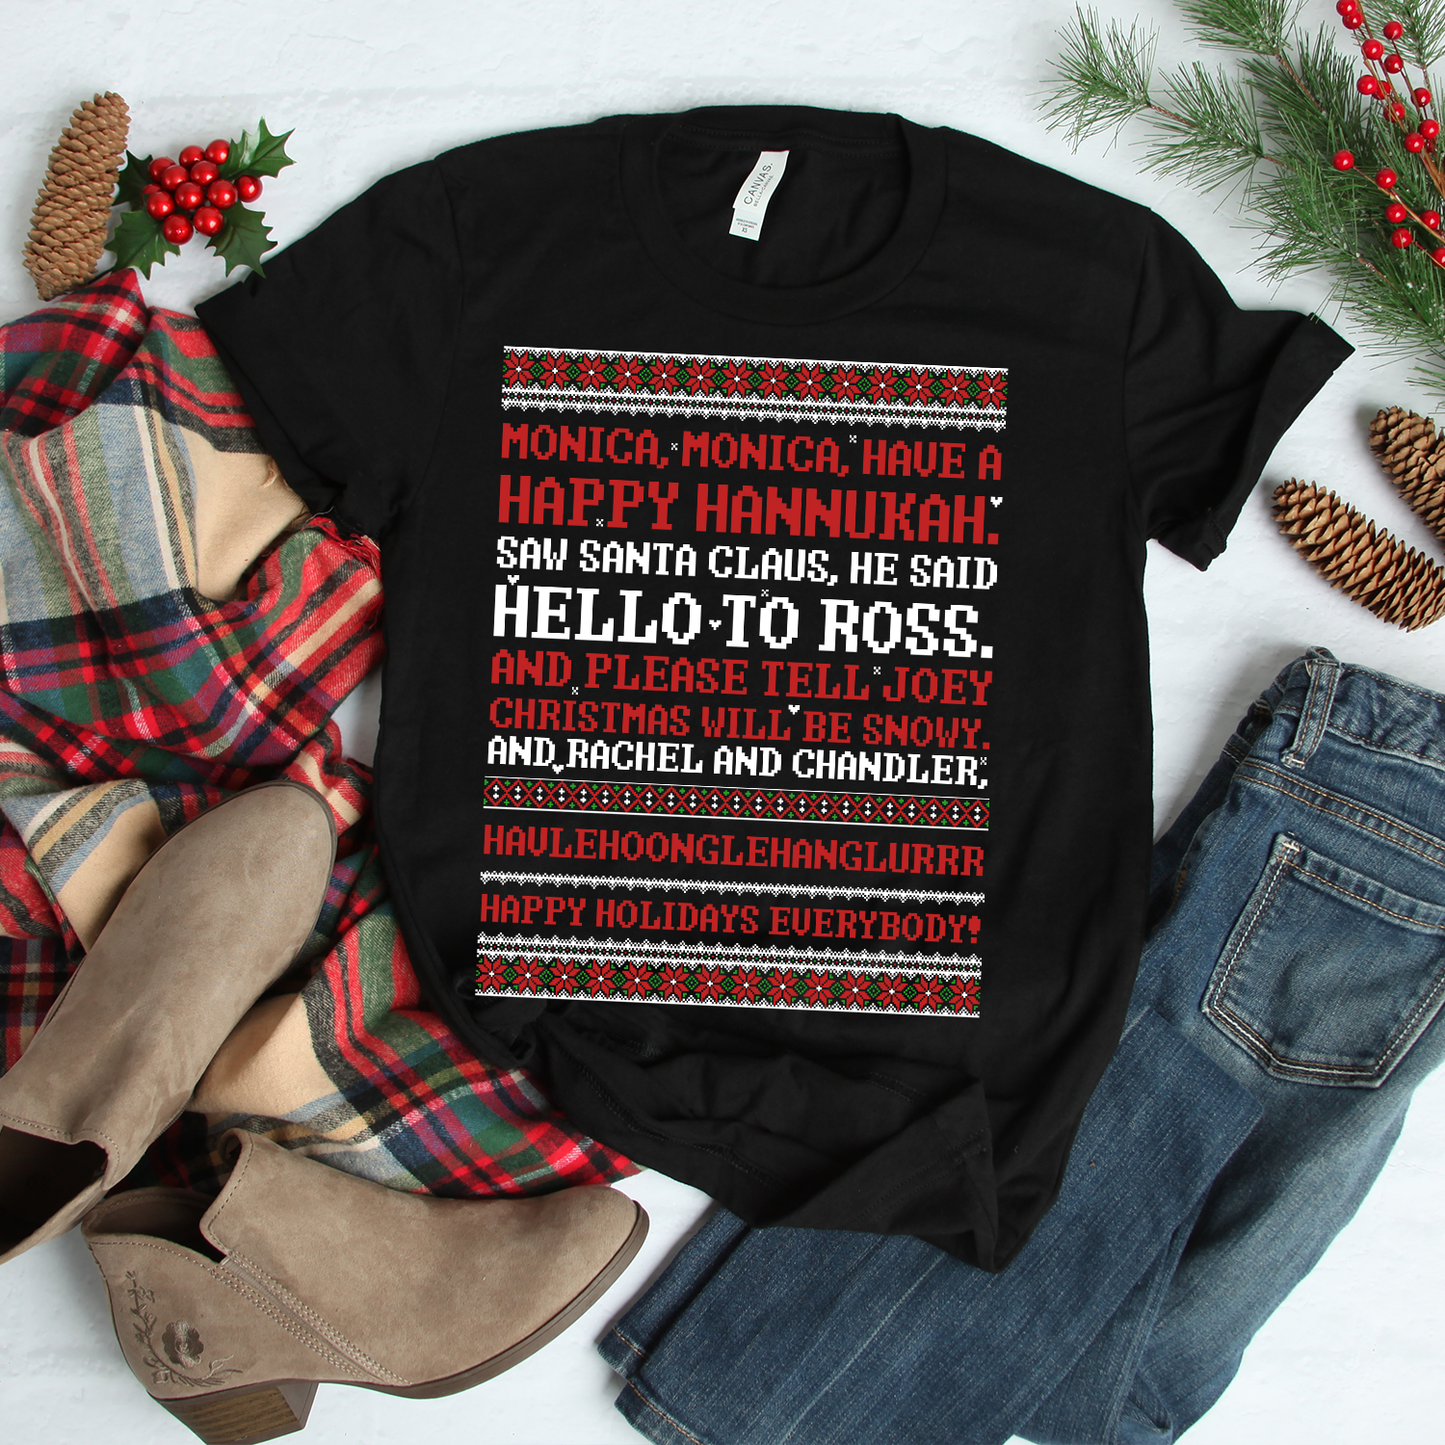 SALE - Happy Hanukkah Monica - Friends Christmas T-Shirt Festive Top